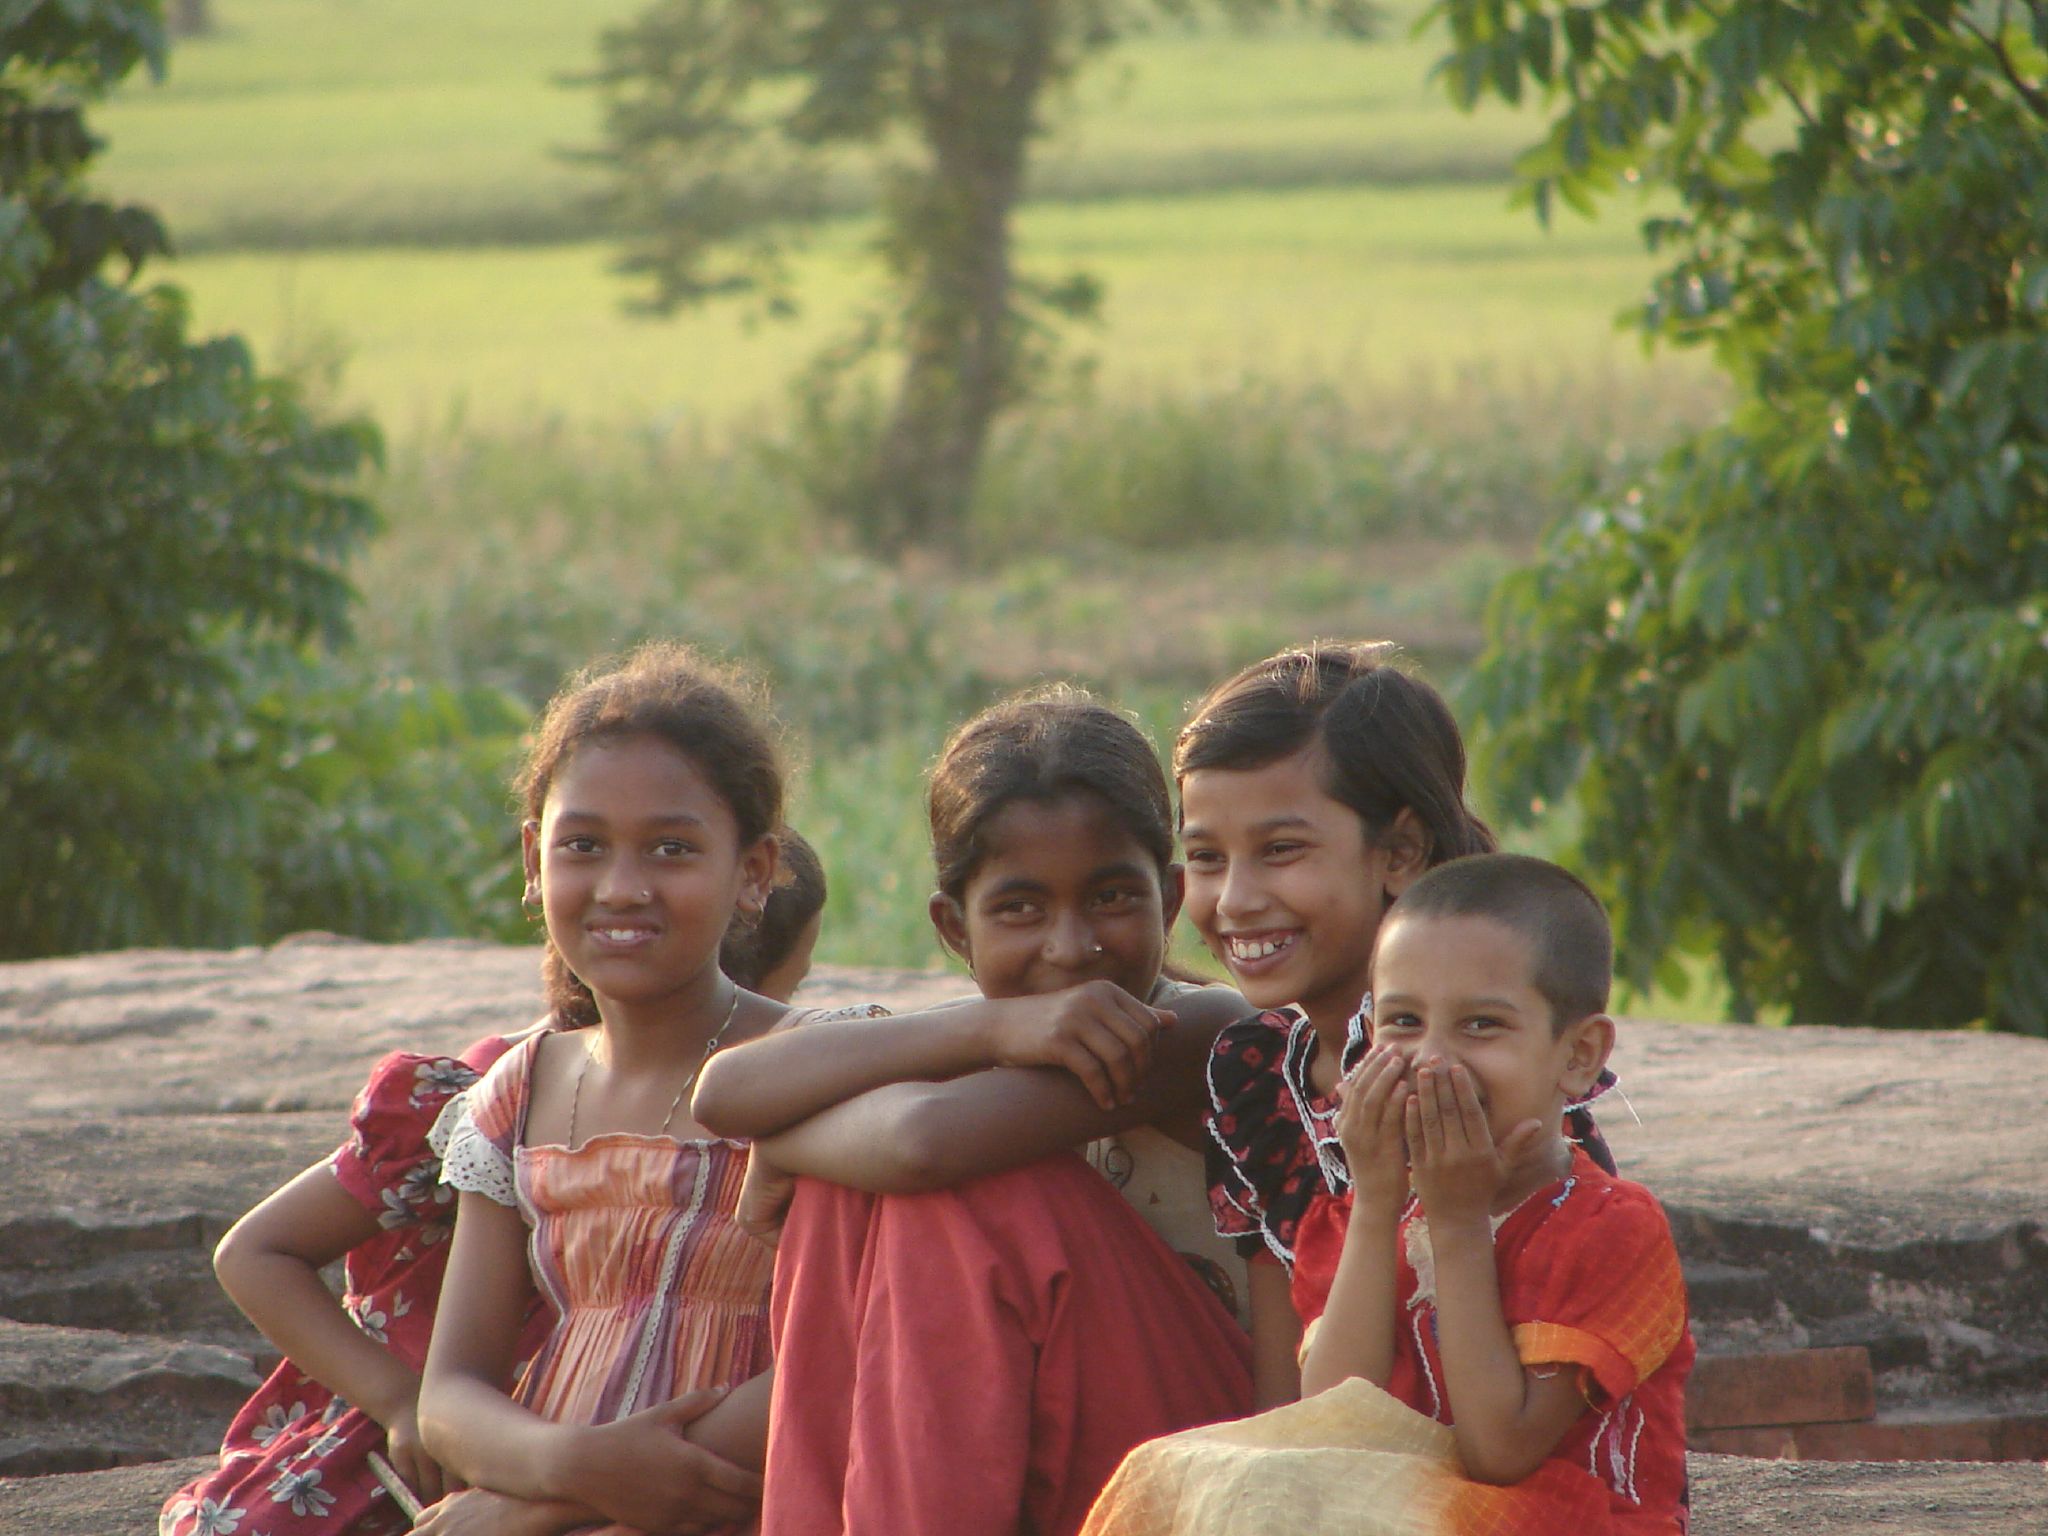 La paz comienza con una sonrisa, niños en Bangladesh, mayo 2008